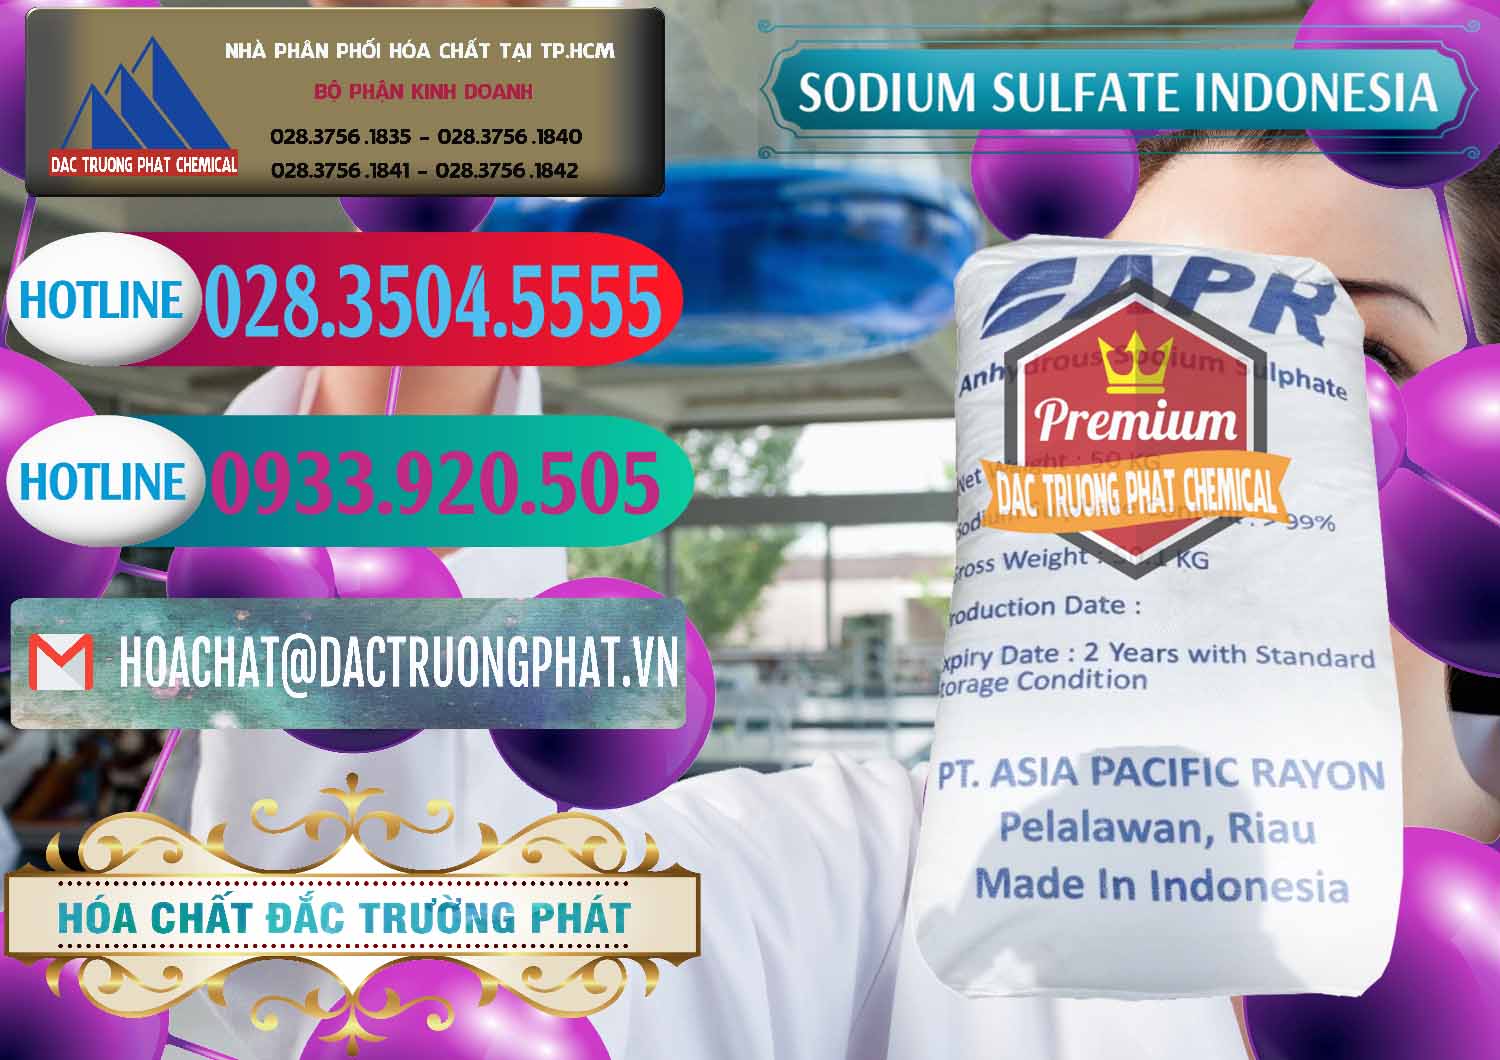 Cty cung cấp _ bán Sodium Sulphate - Muối Sunfat Na2SO4 APR Indonesia - 0460 - Chuyên bán ( phân phối ) hóa chất tại TP.HCM - truongphat.vn